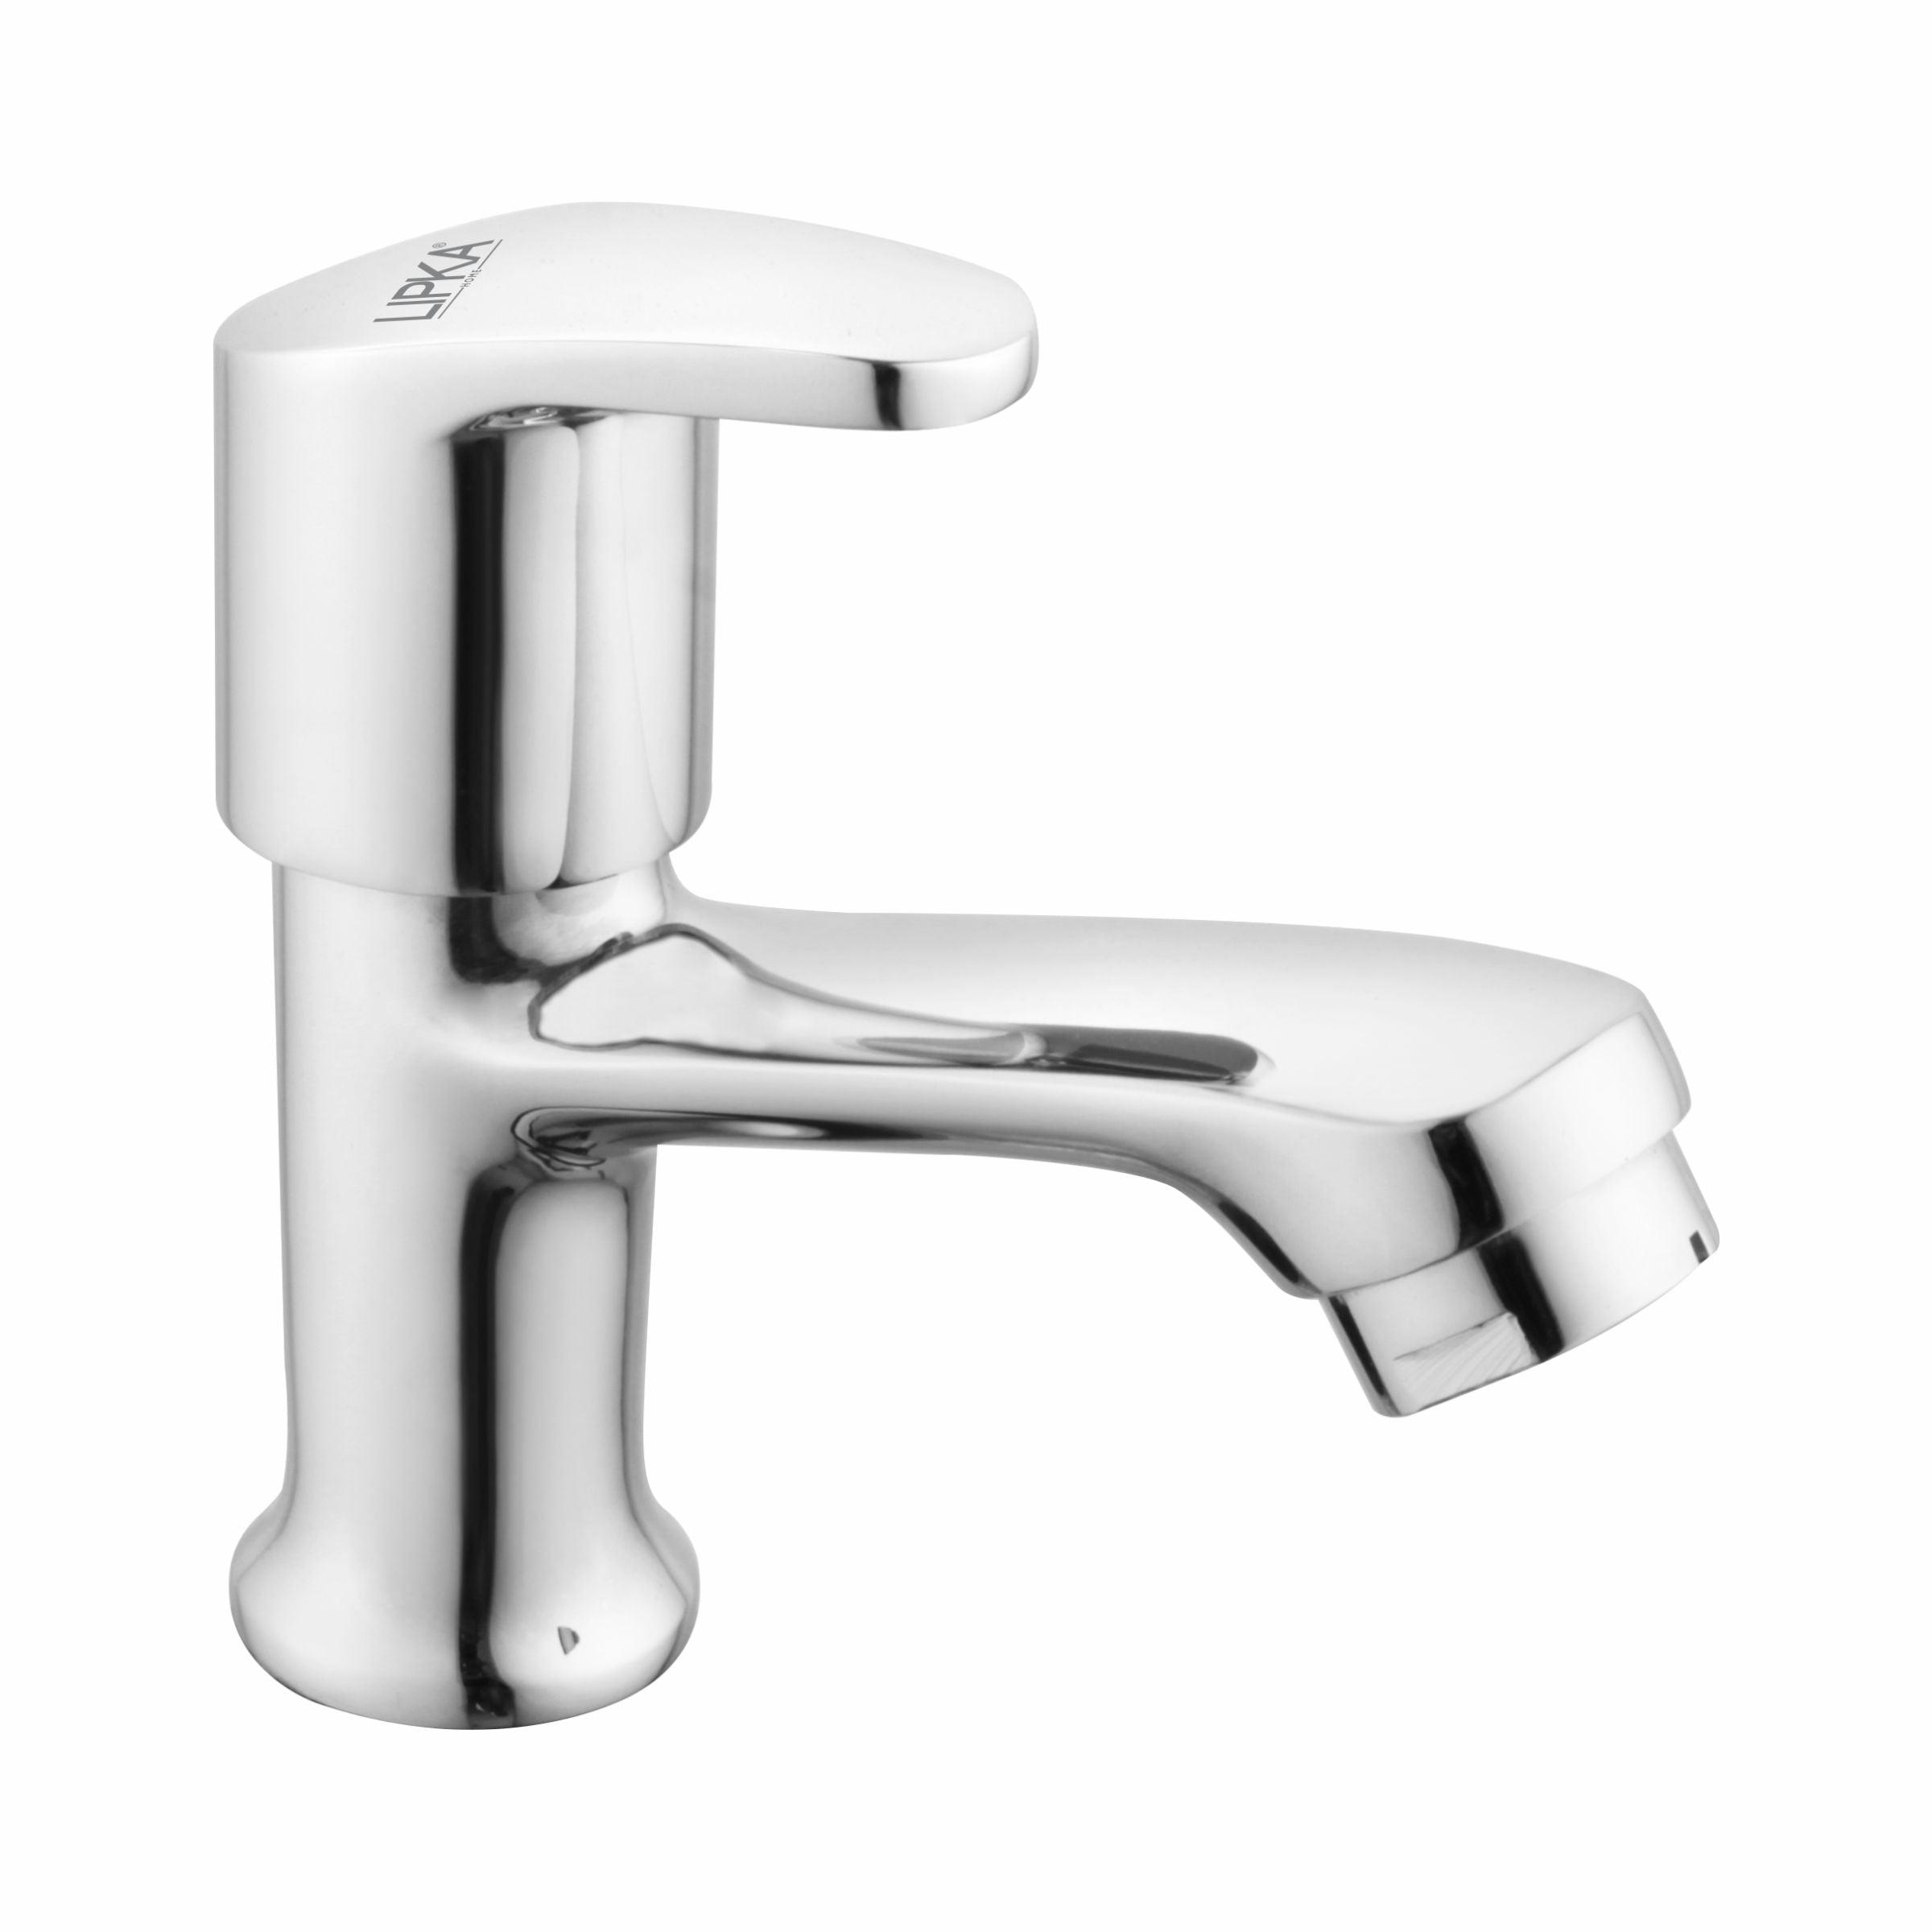 Apple Pillar Tap Brass Faucet - LIPKA - Lipka Home